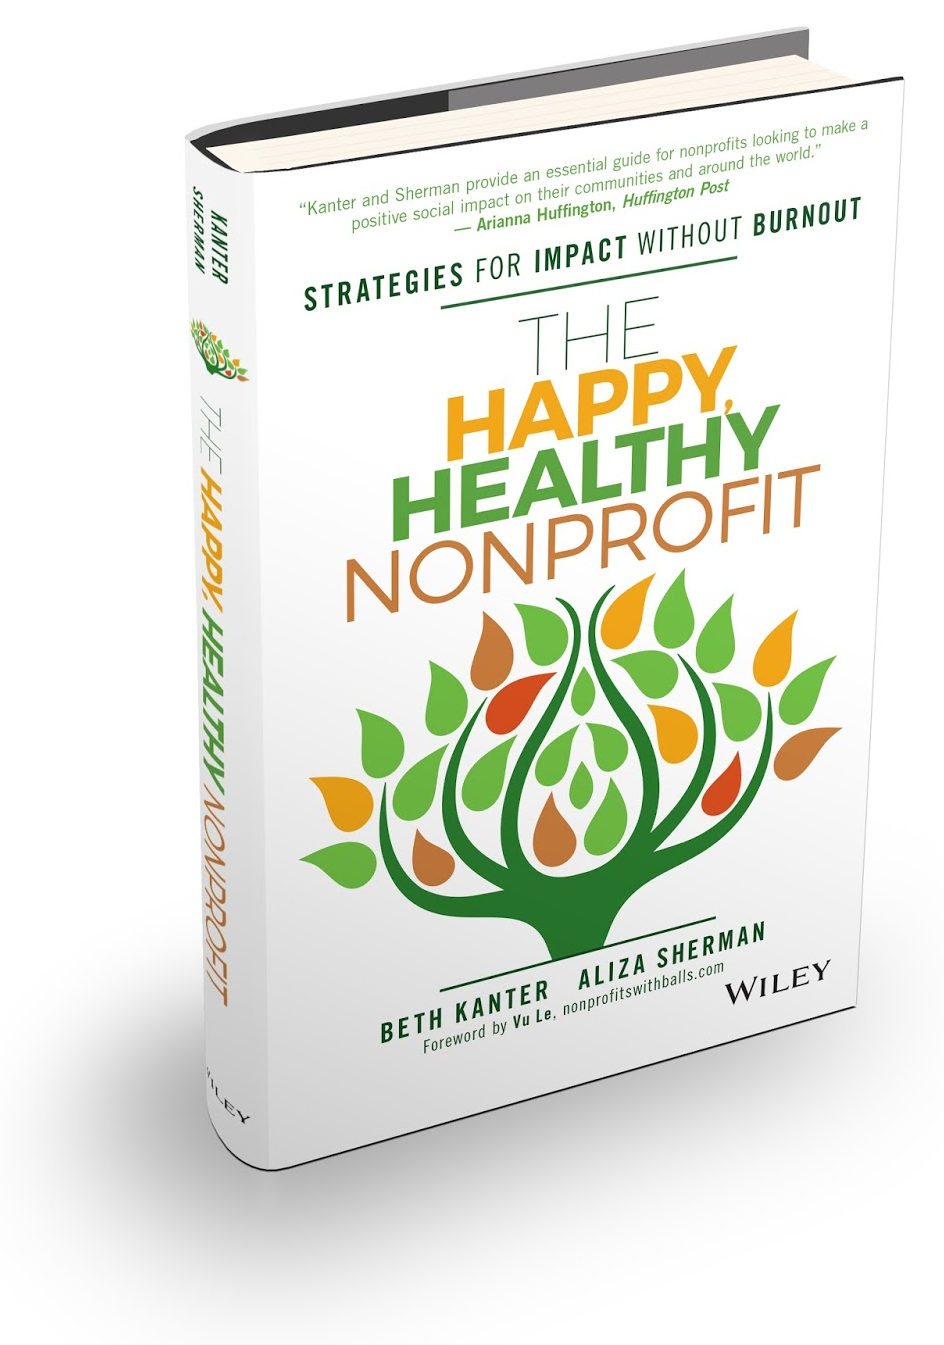 Happy Nonprofit Culture